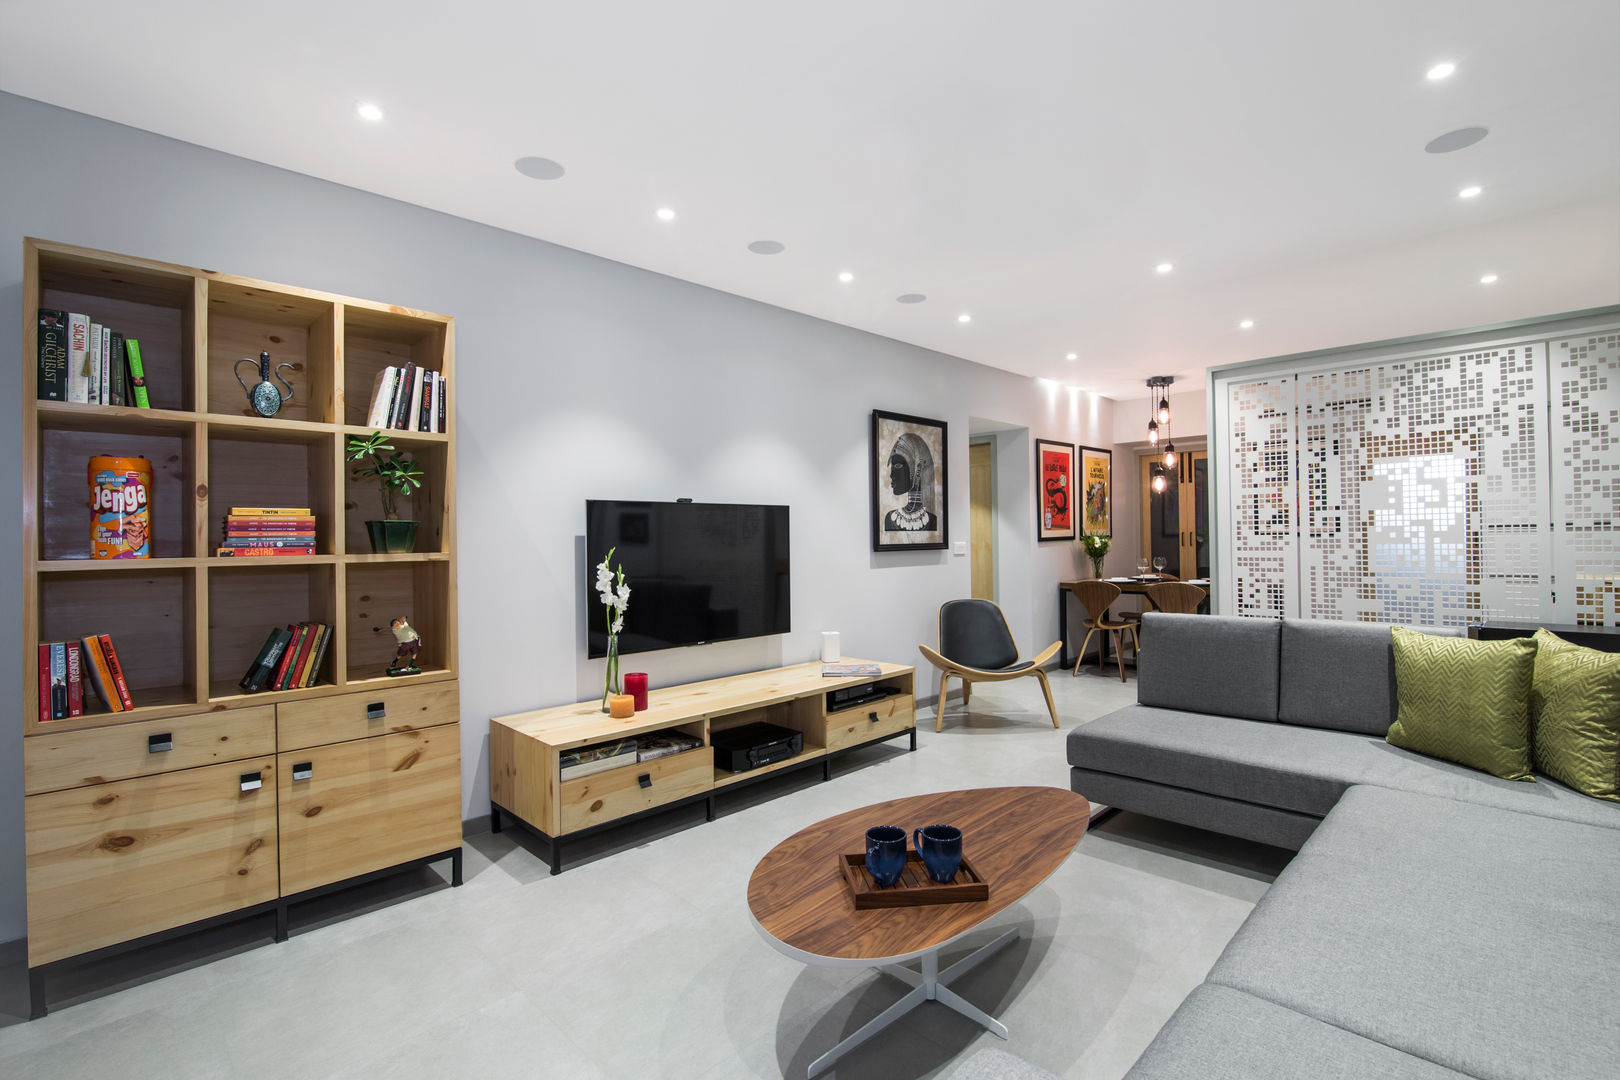 Residential - Lower Parel, Nitido Interior design Nitido Interior design Salones de estilo moderno Azulejos Muebles de televisión y dispositivos electrónicos